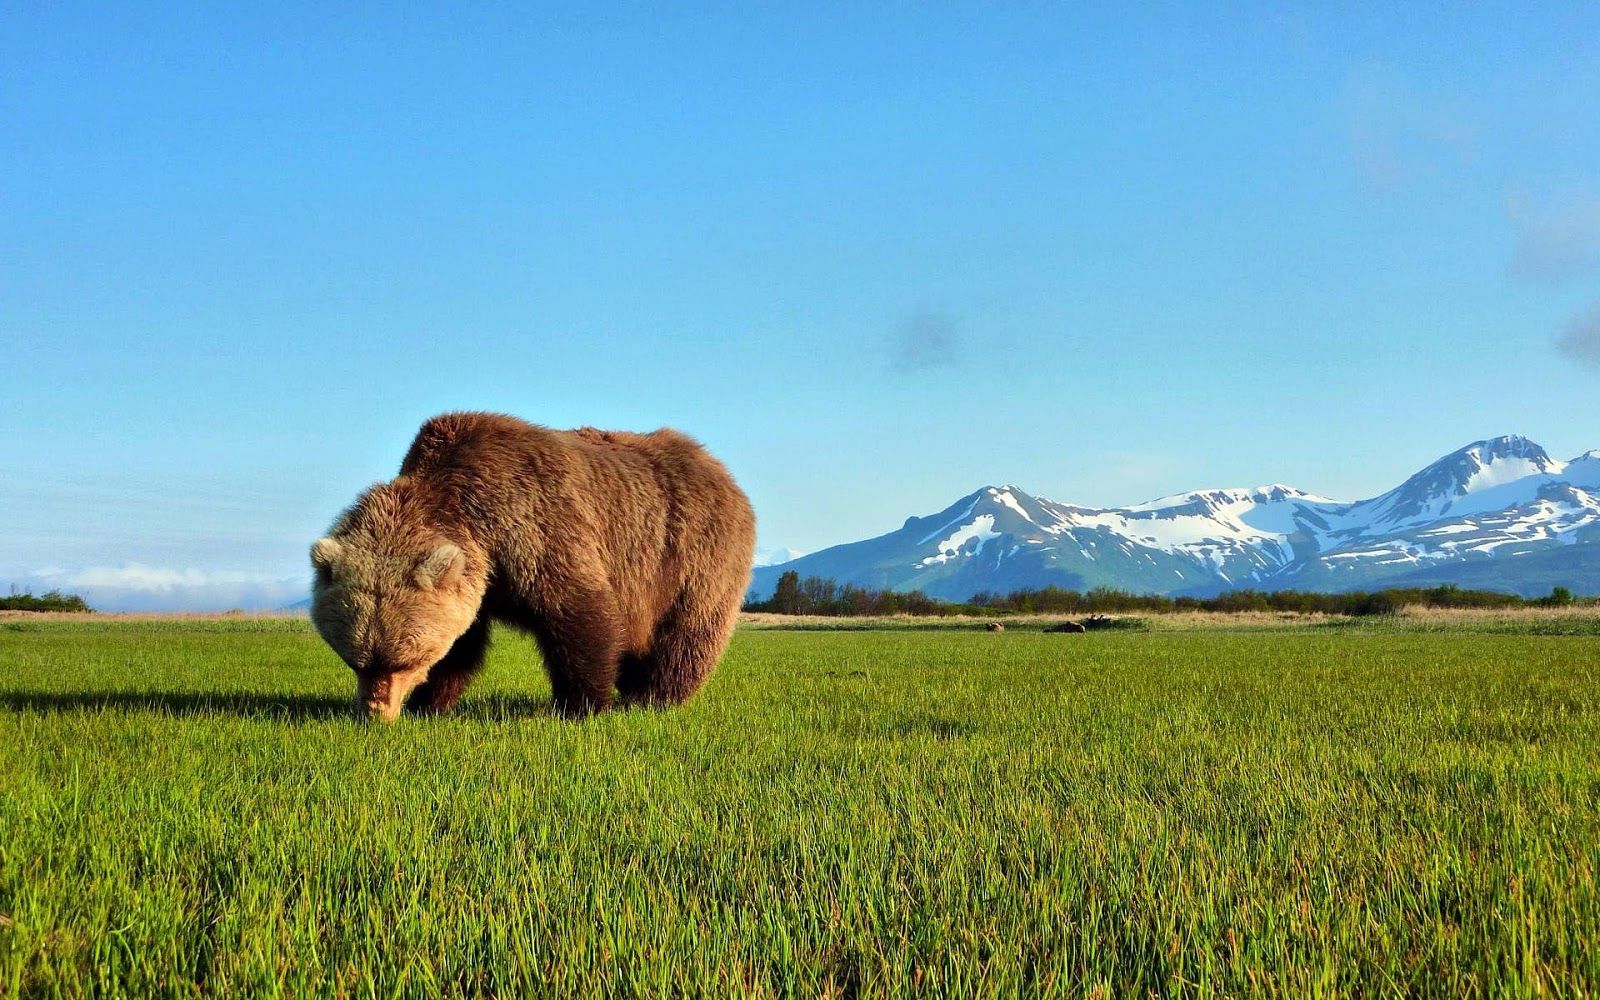 Wallpaper of a bear eating grass. HD Animals Wallpaper